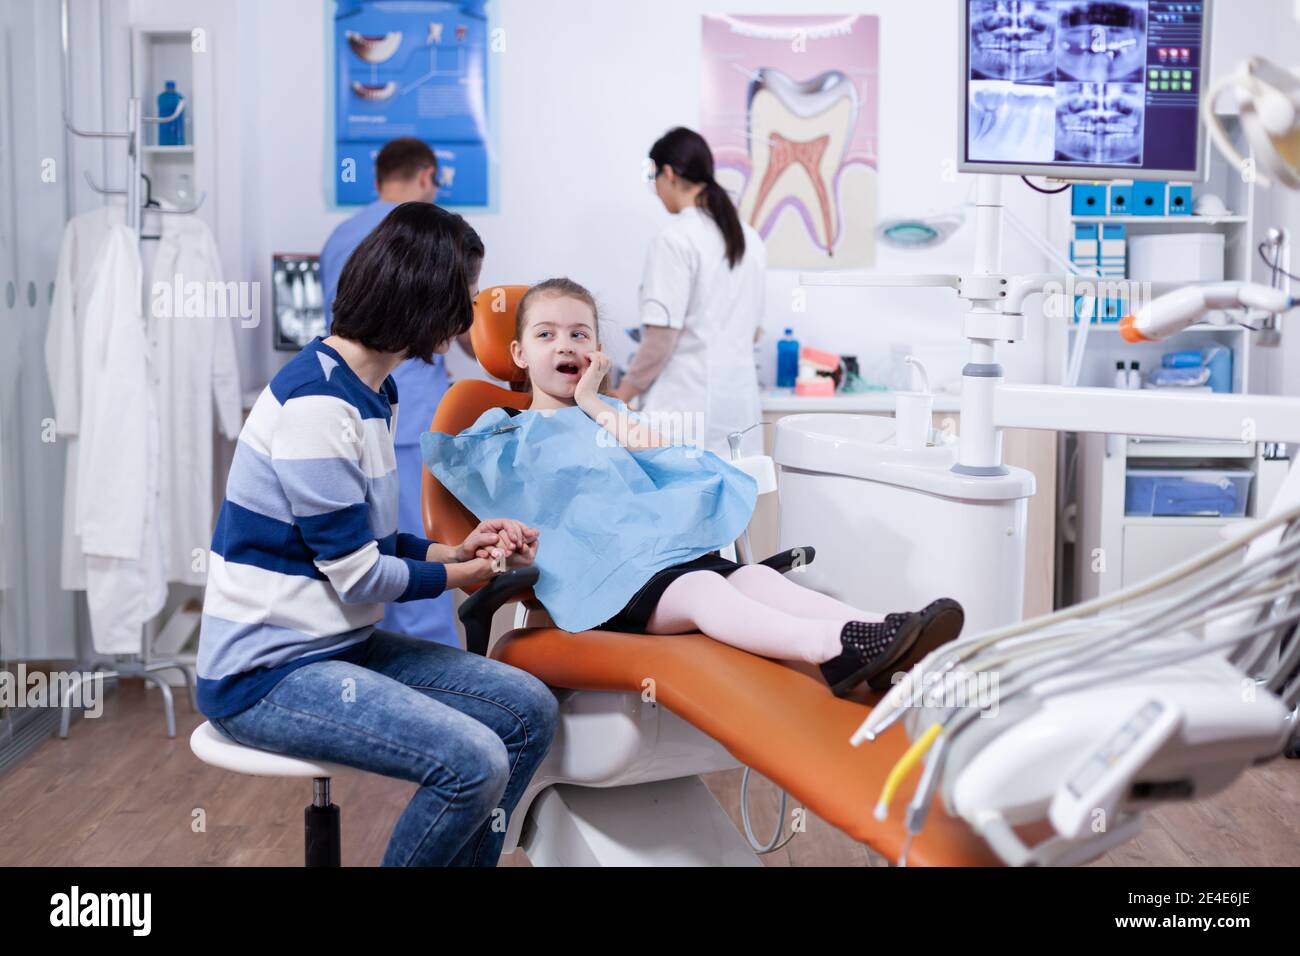 Enfant Portant Un Bavoir Dentaire Assis Sur Une Chaise Dans Un Cabinet  Dentaire Avec La Bouche